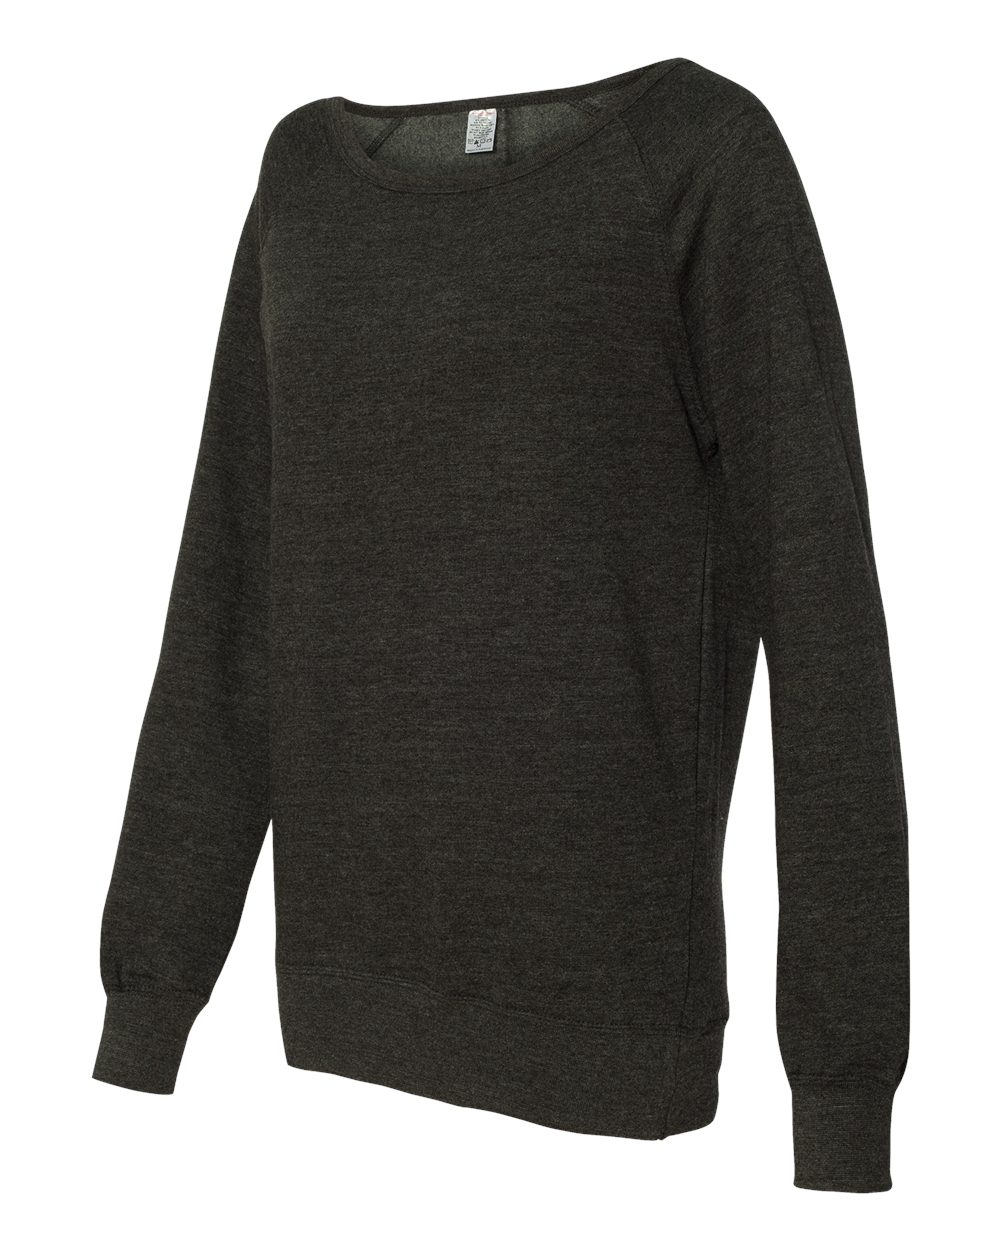 Independent Trading Co. Junior's Heavenly Fleece Crewneck Sweatshirt - SS240